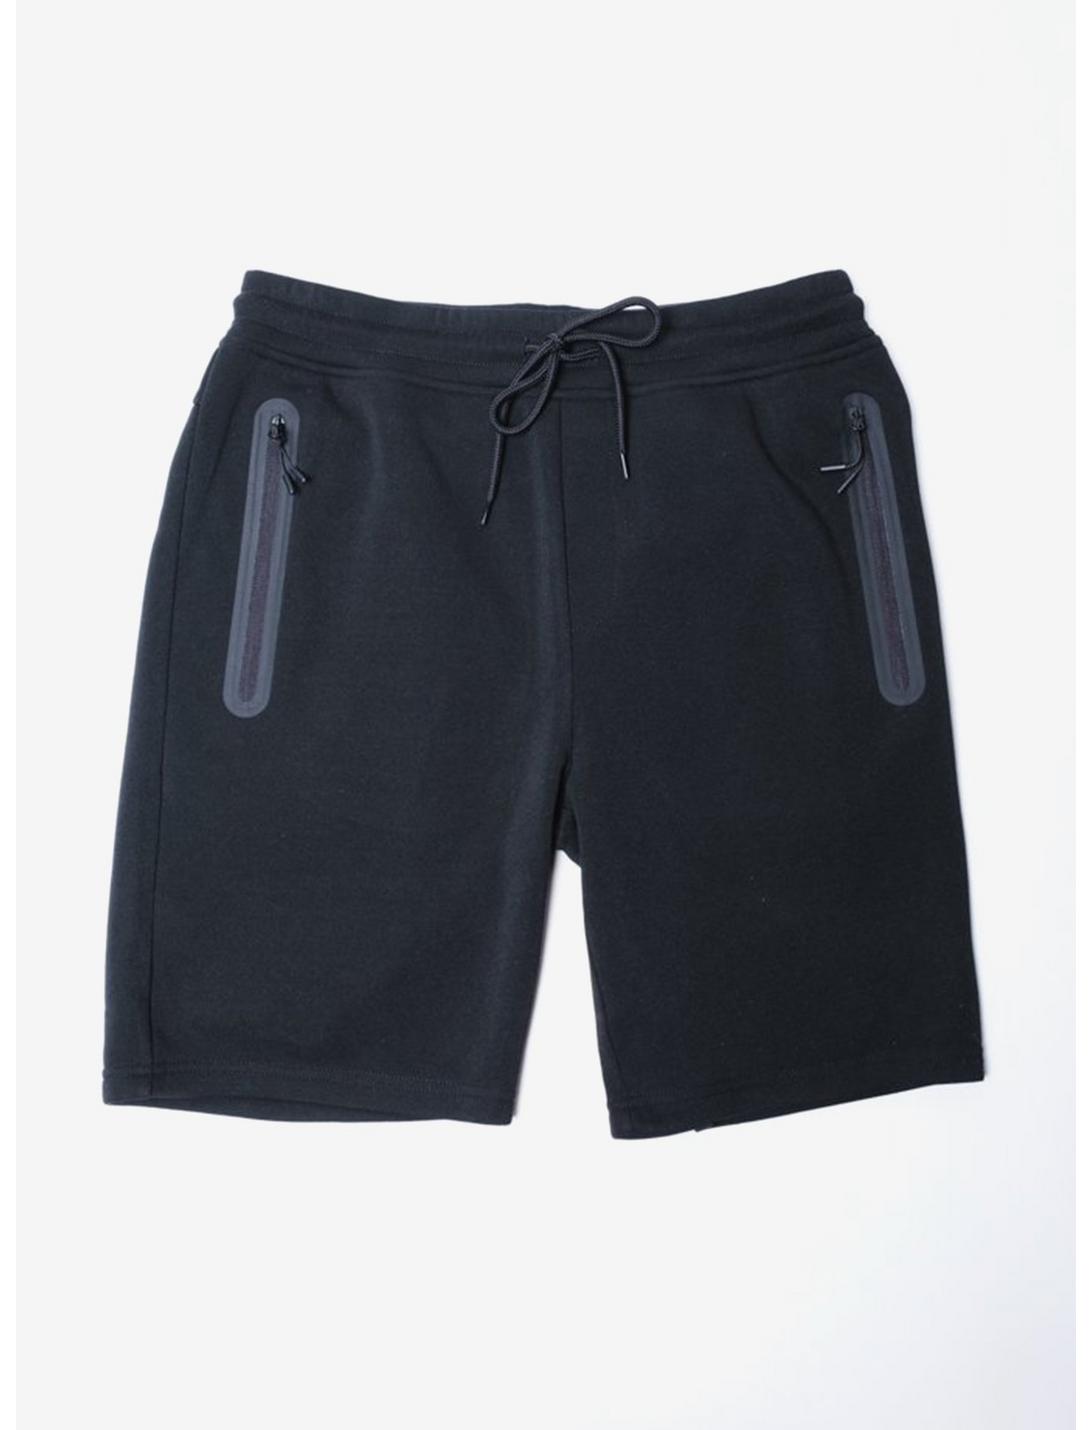 Black Heat Seal Zip Pocket Shorts, BLACK, hi-res